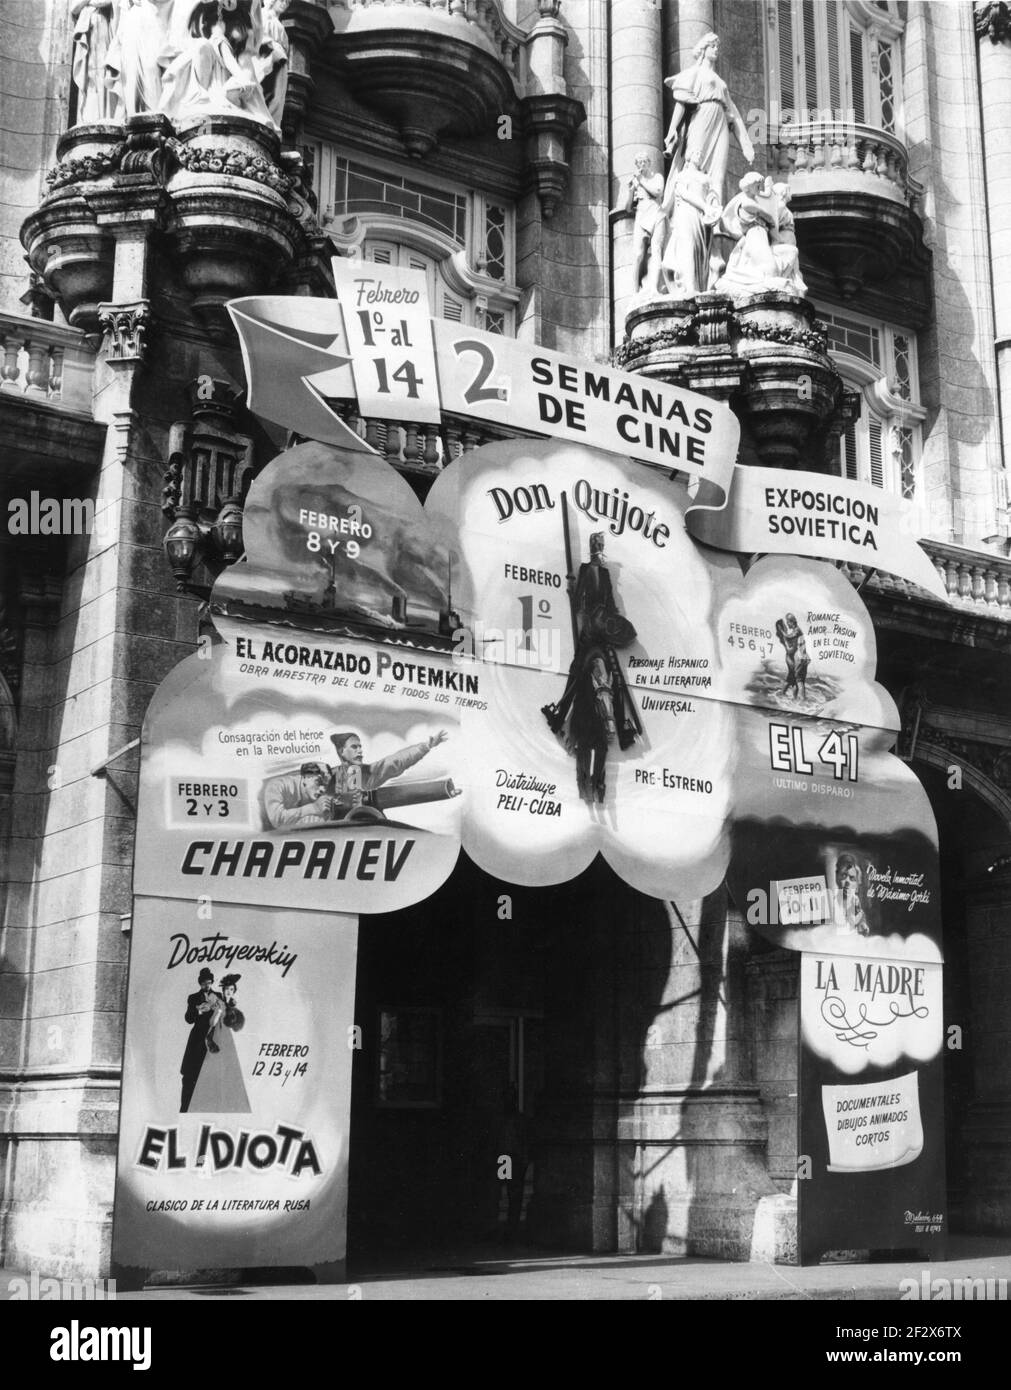 Cinéma / Cinéma à la Havane Cuba en février 1960 Présentation d'une saison de films russes classiques, y compris BATTLESHIP POTEMKIN (1925) CHAPAYEV (1934) THE IDIOT (1958) DON QUICHOTTE (1957) THE QUARANTE ET UNIÈME ((1956) et MÈRE (1956) après la Révolution cubaine 1959 dirigé par Fidel Castro et Che Guevara contre le dictateur Fulgencio Batista Banque D'Images